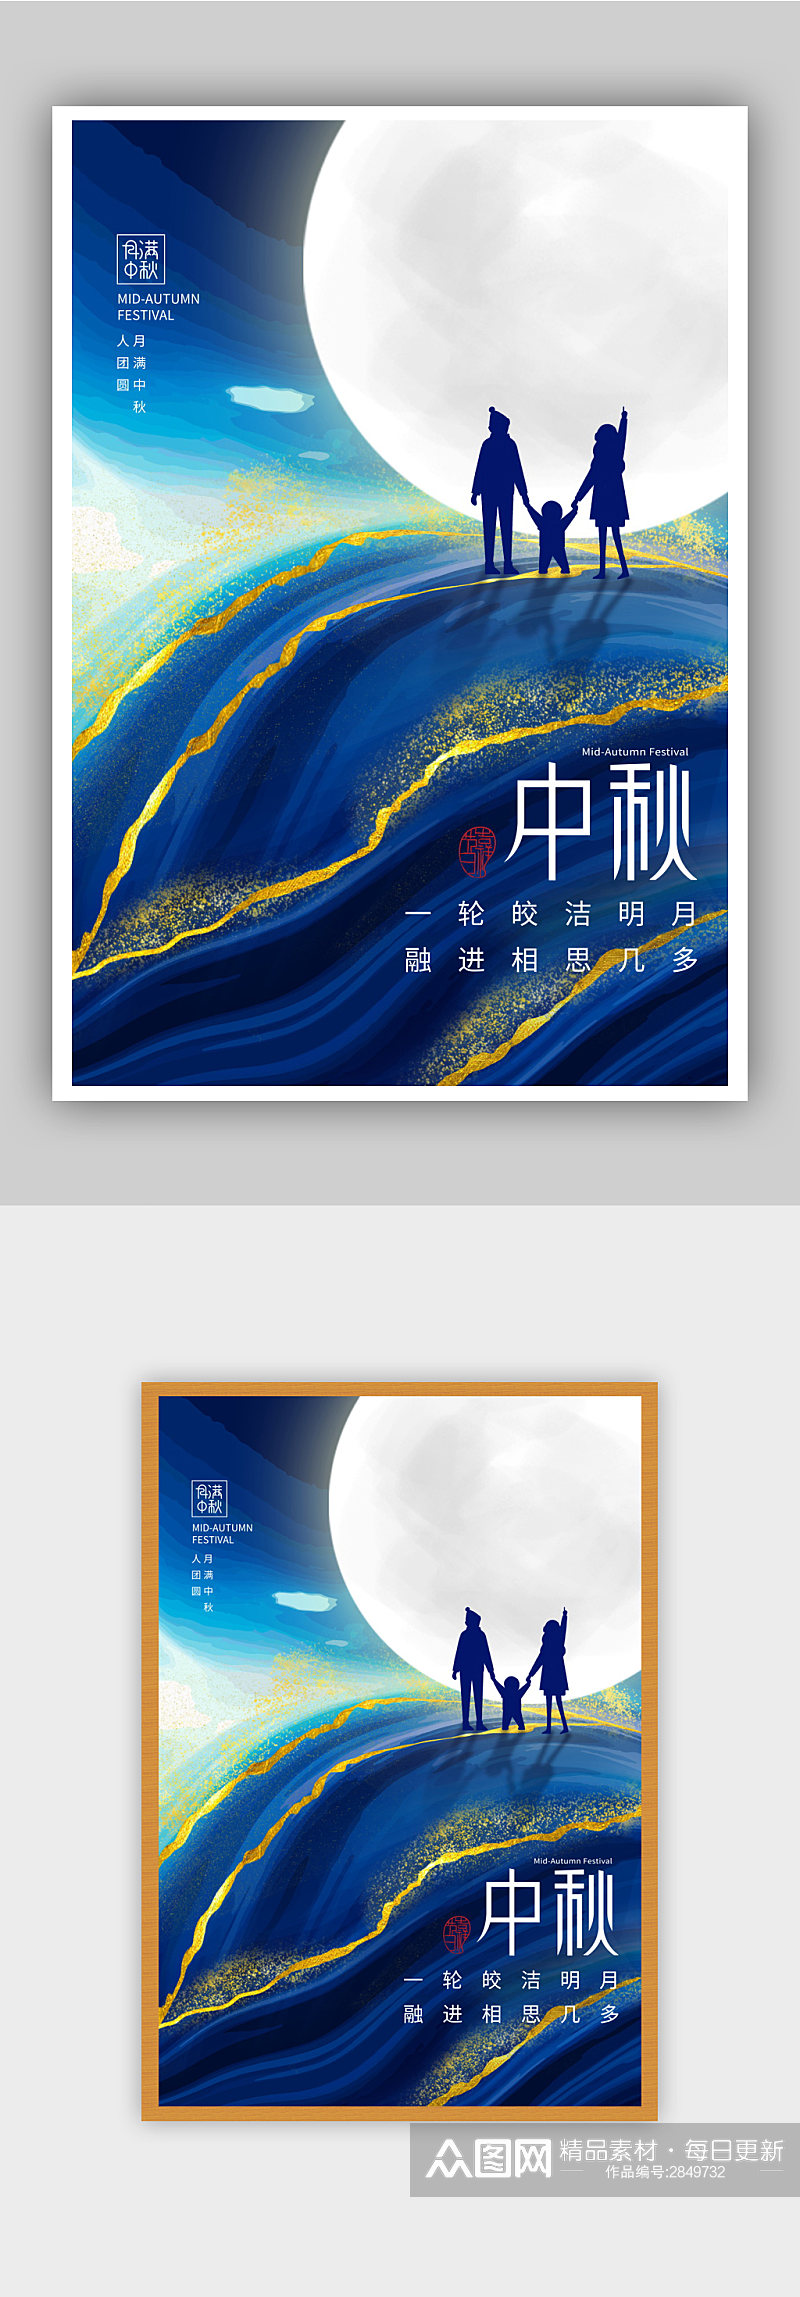 中国风中秋节节日快乐海报素材